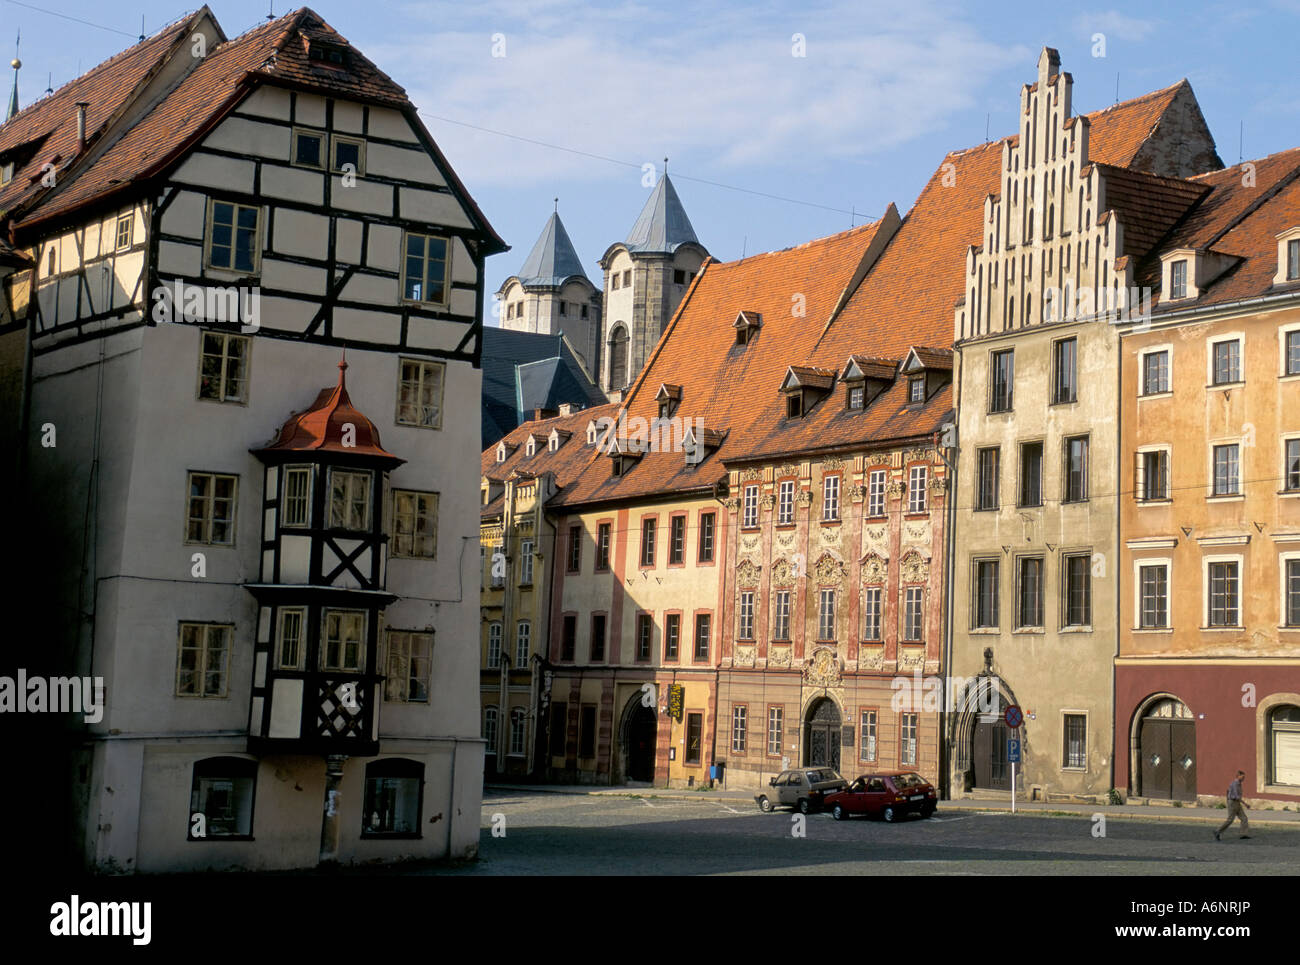 Markt quadratische Gebäude im mittelalterlichen Stadt Cheb Böhmen Tschechien Europas Stockfoto